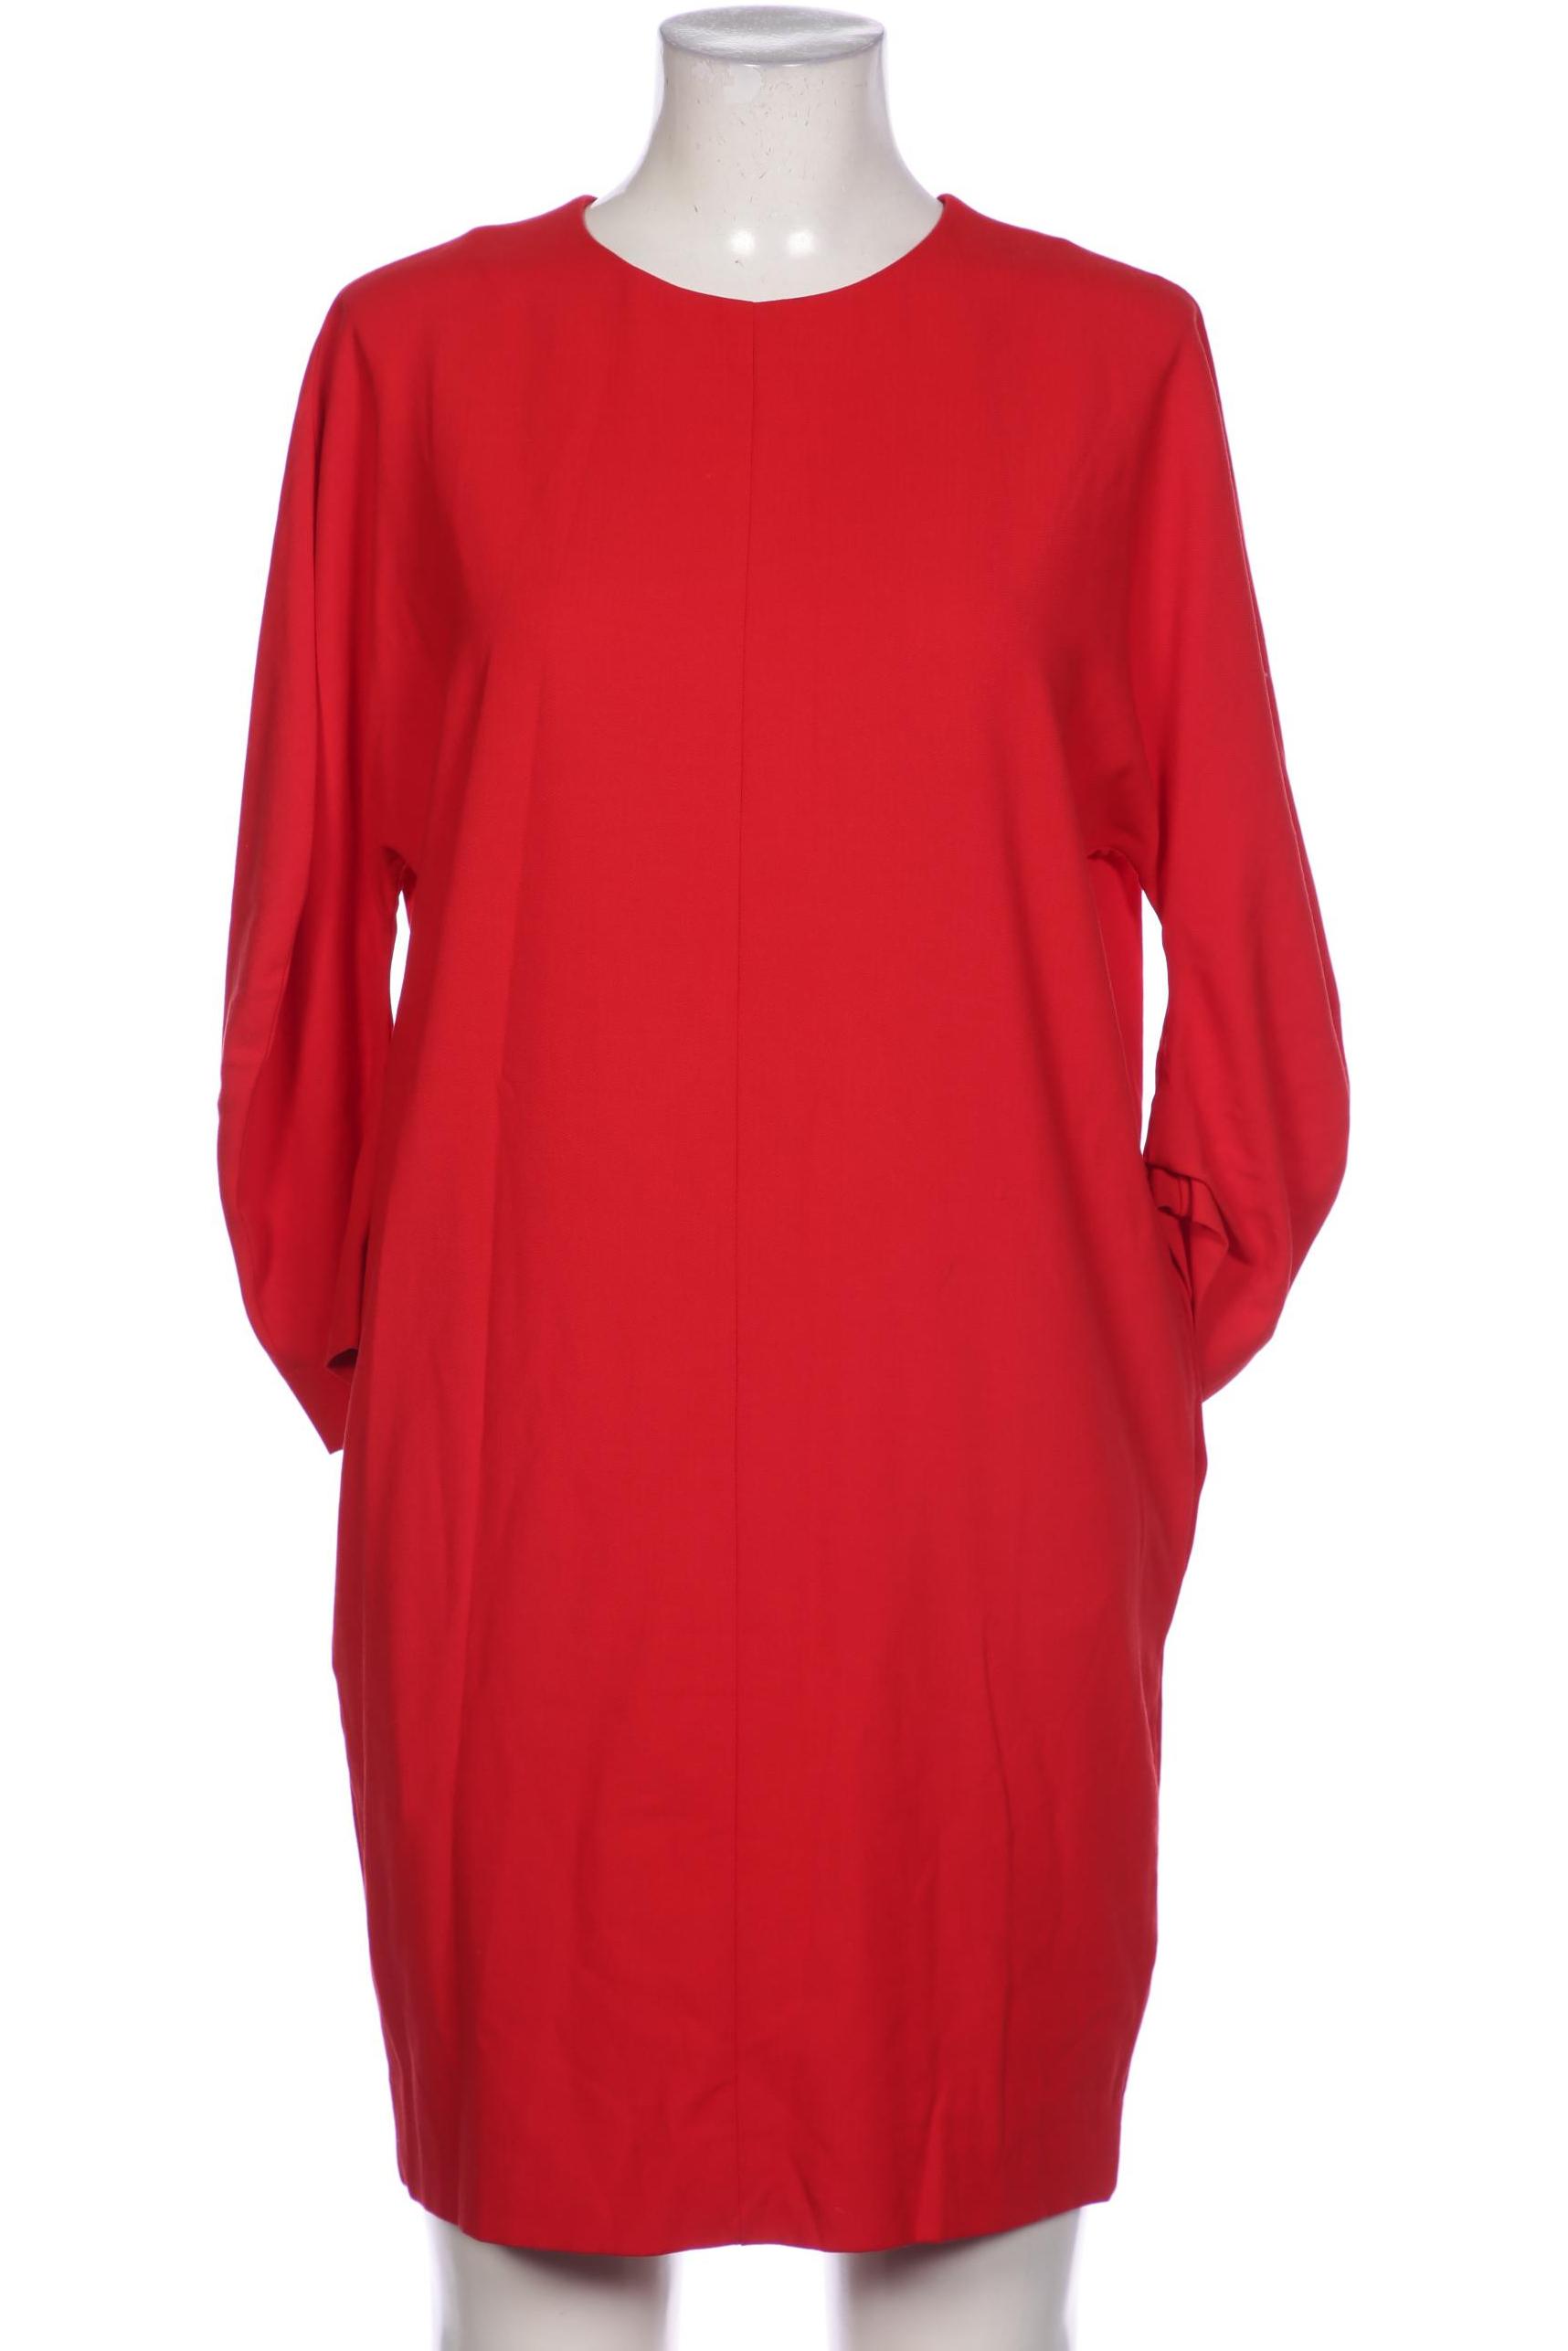 COS Damen Kleid, rot von COS